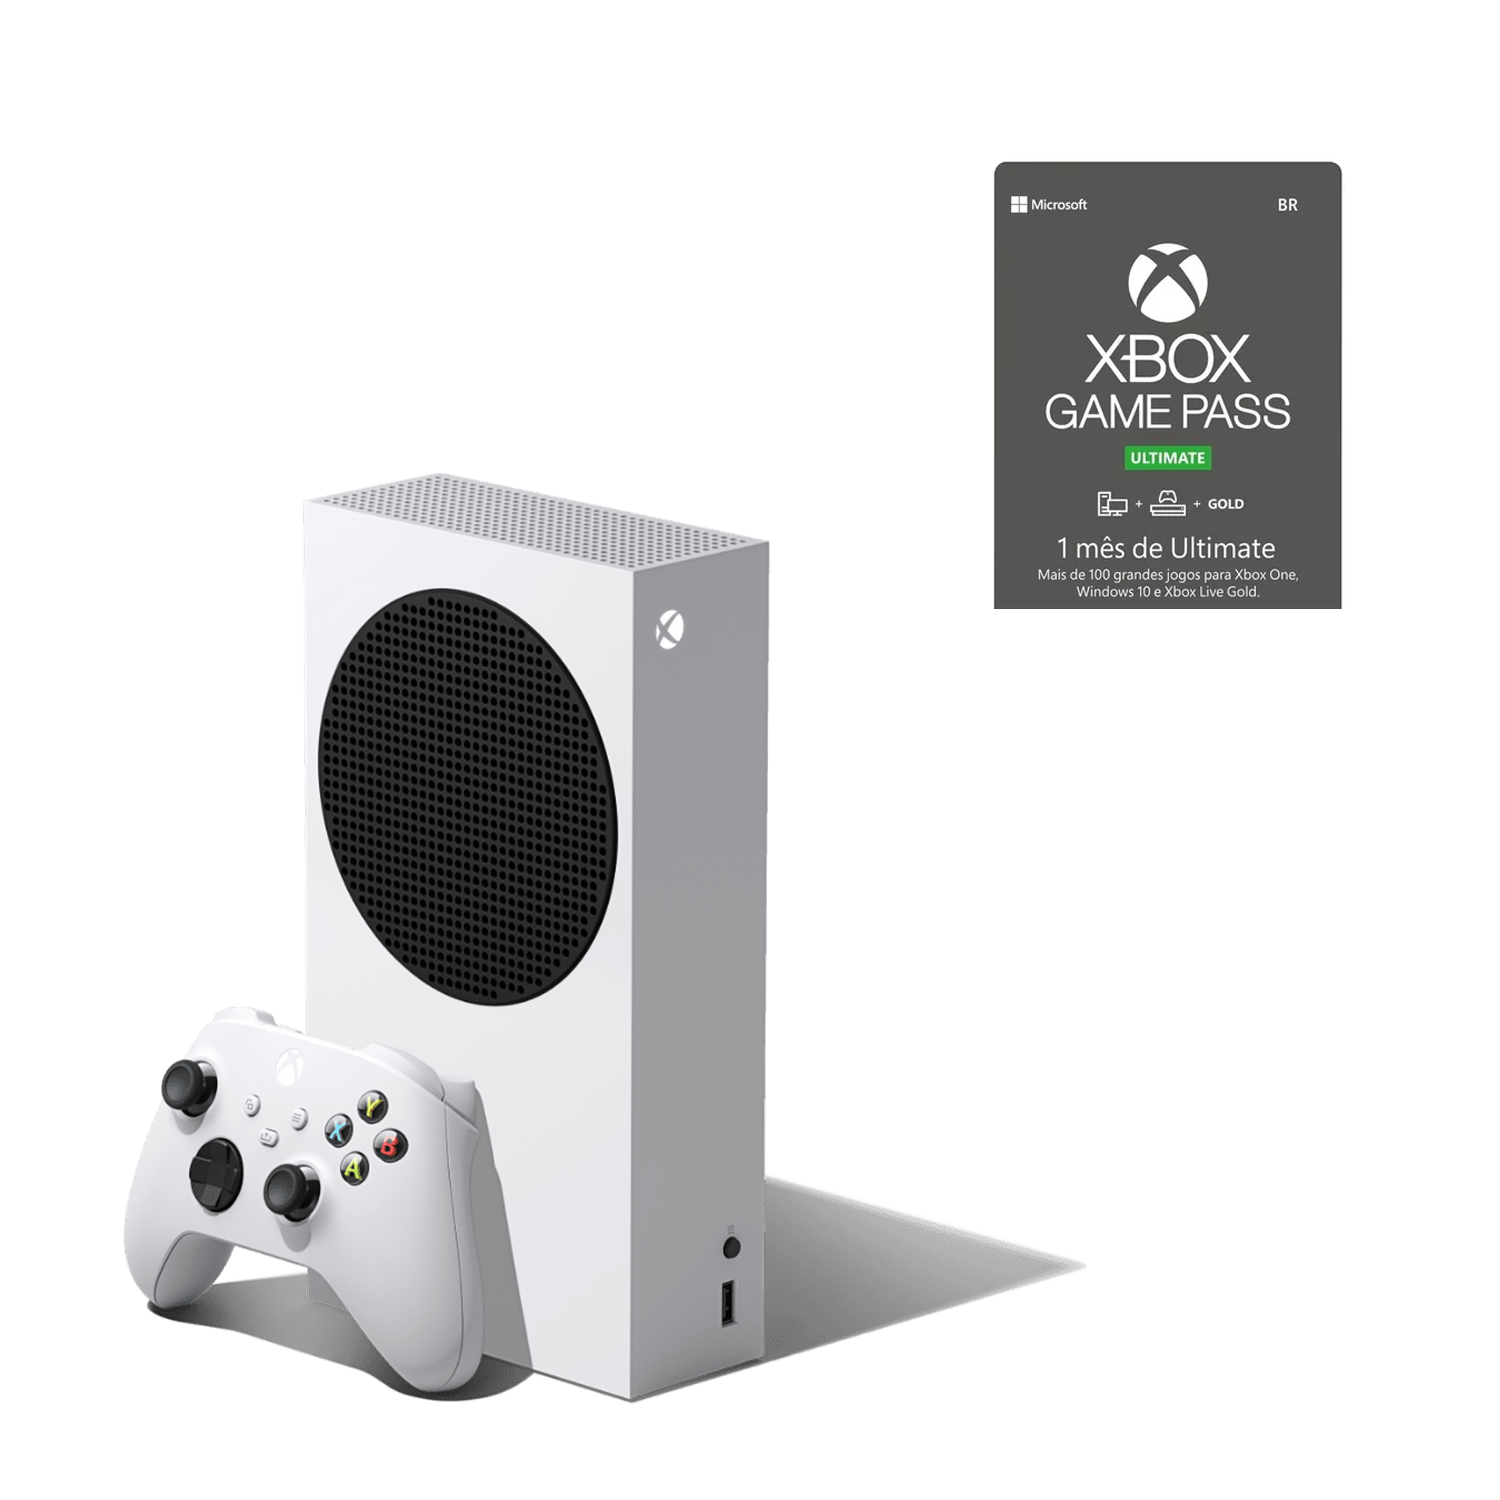 Comprar Cartão Xbox Game Pass Ultimate 1 Mês